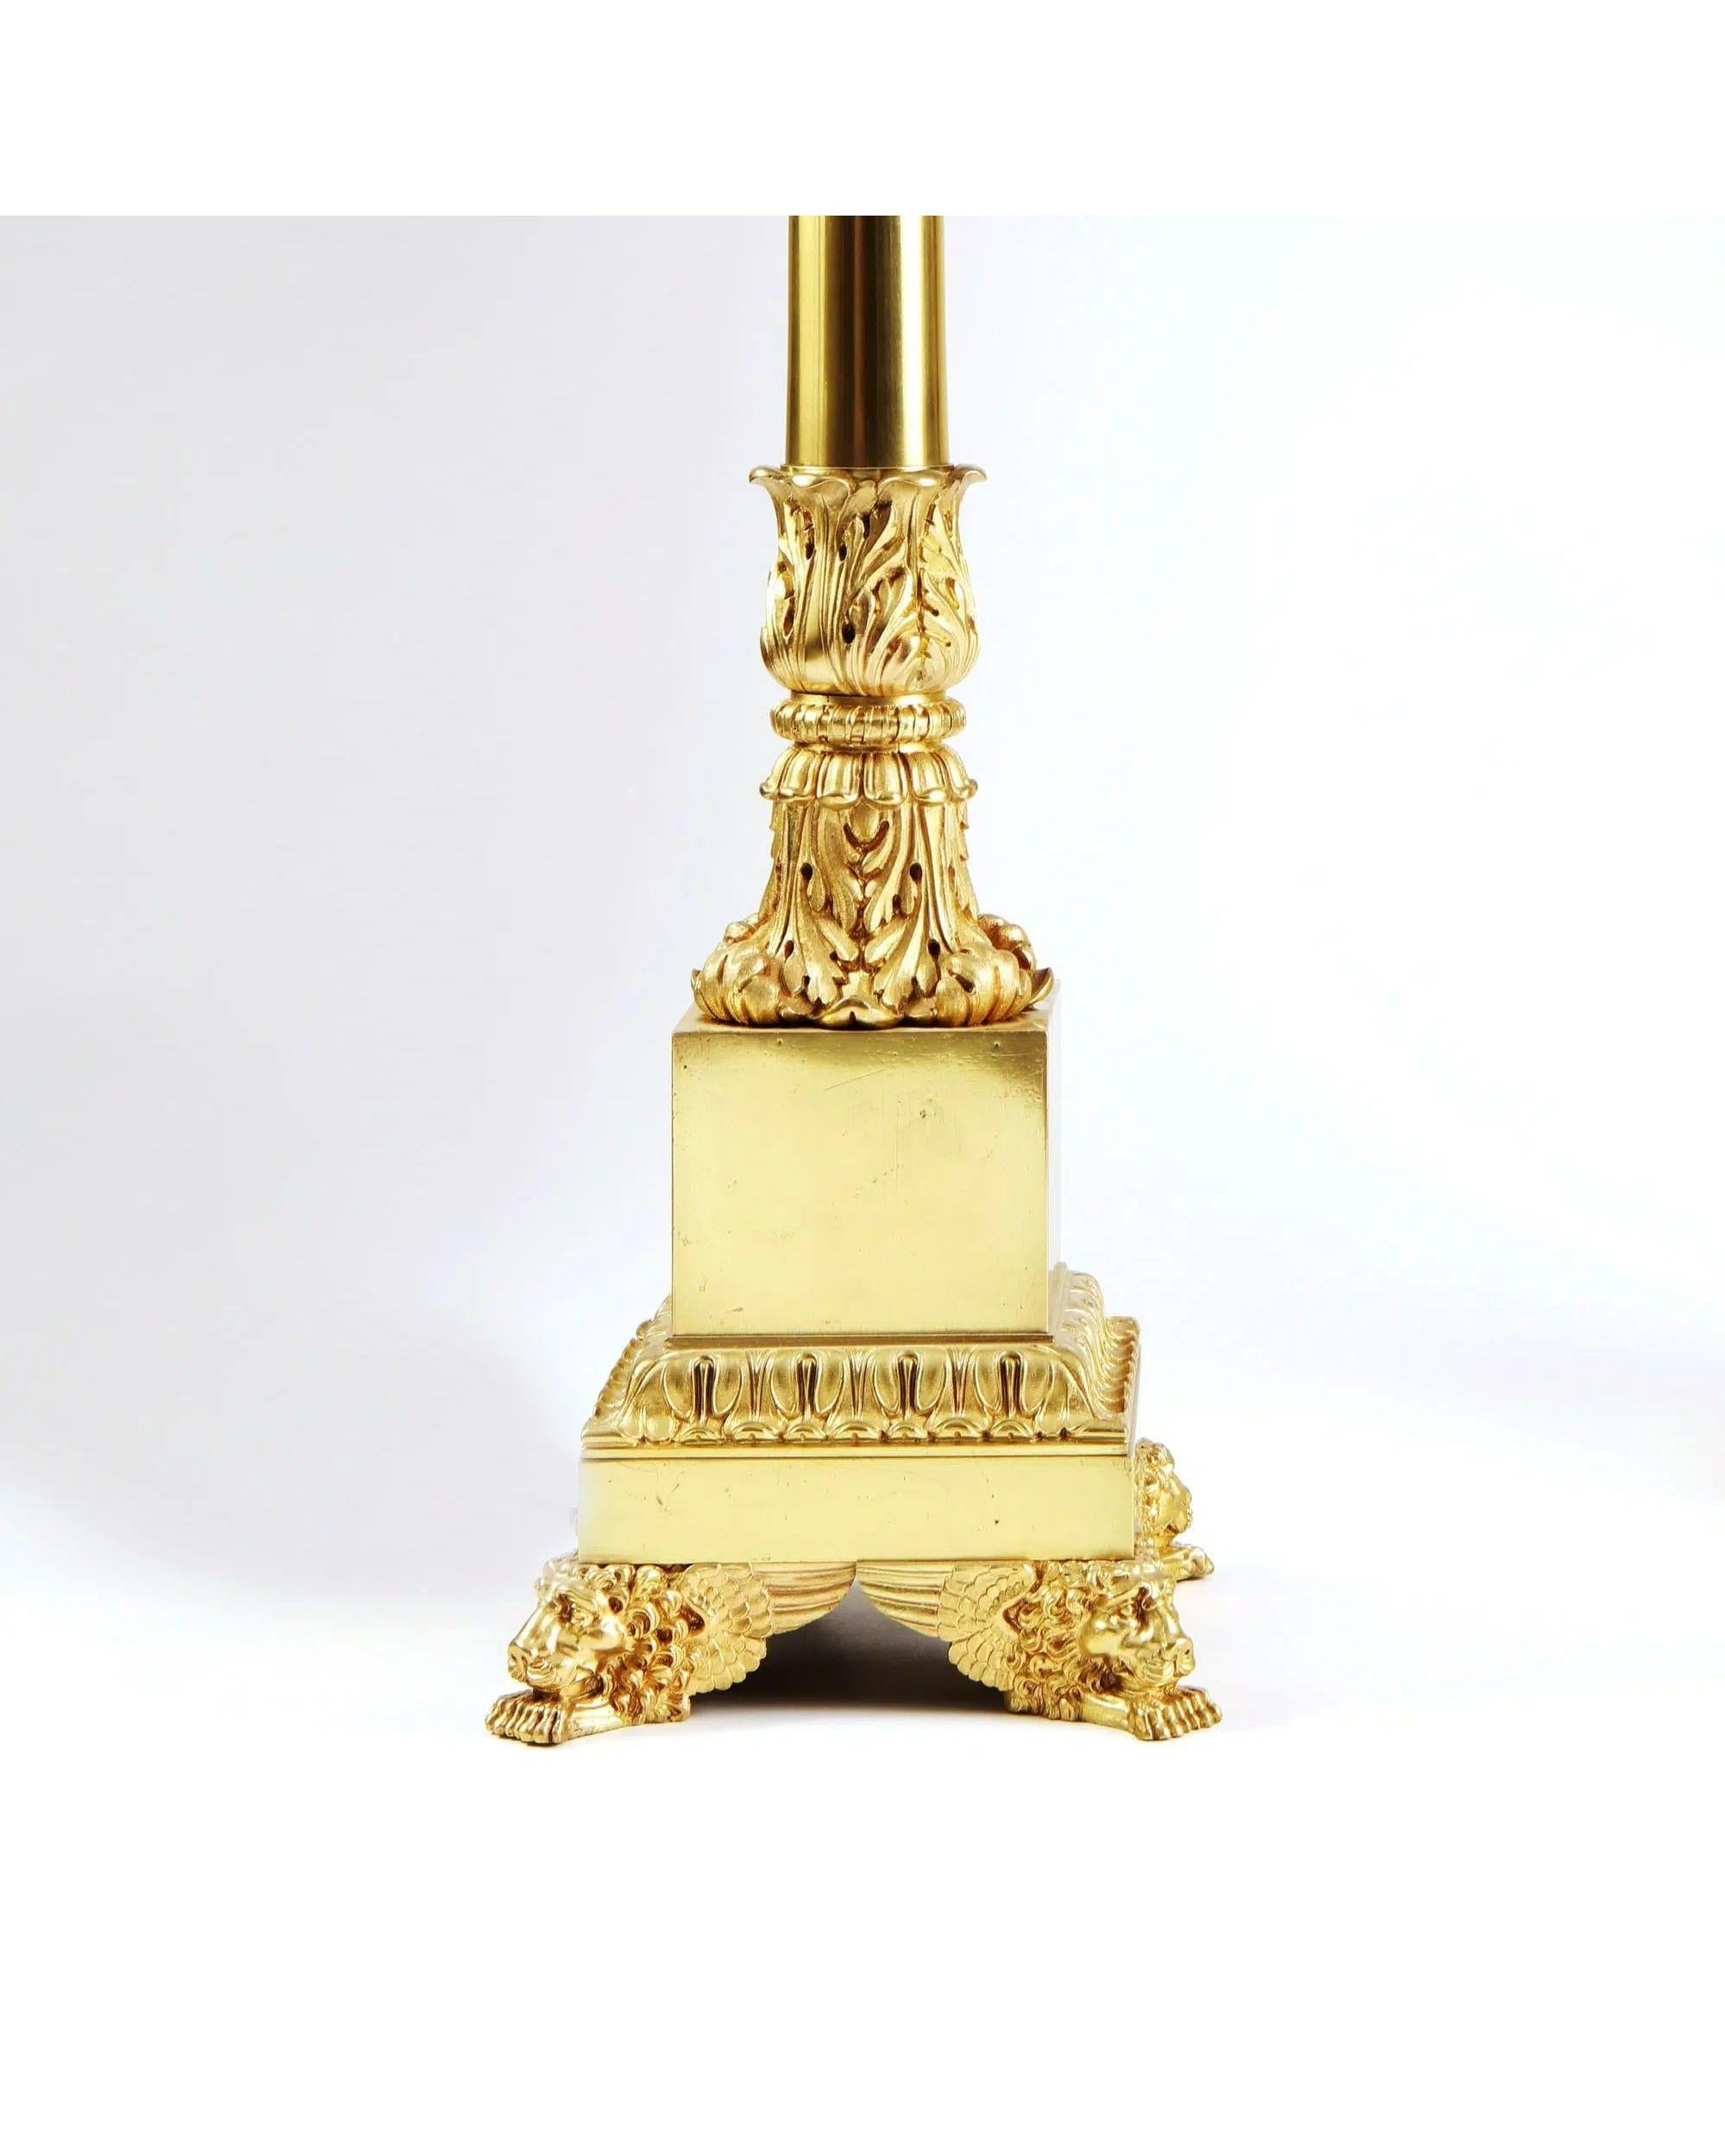 Paar französische Tischlampen aus polierter Bronze von Carcel

Seltenes Paar polierter und lackierter Bronze-Tischlampen aus dem frühen 19. Jahrhundert, die Bernard Guillaume Carcel zugeschrieben werden. Fein dekoriert mit akanthusgeschwungenen